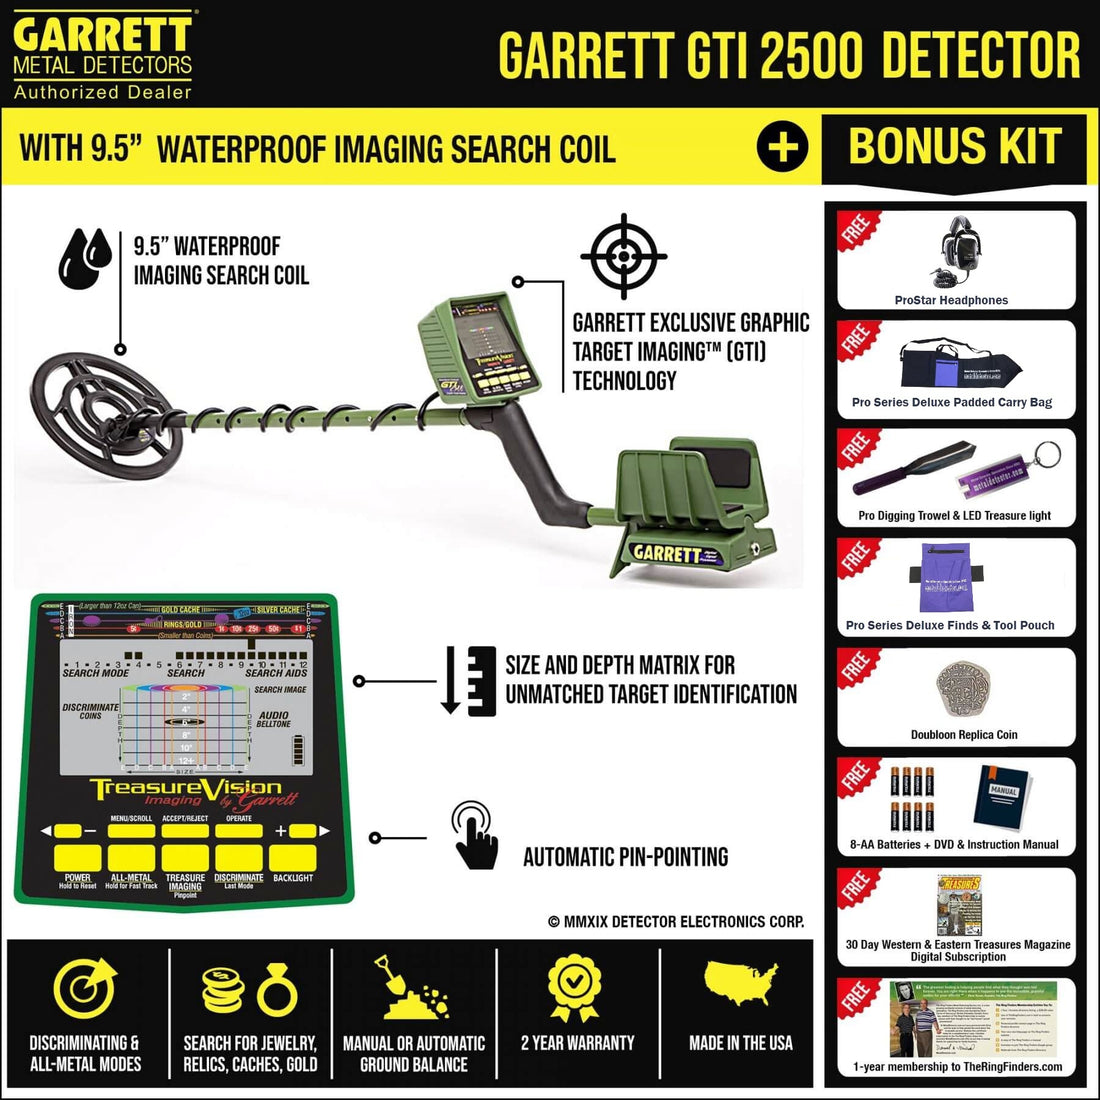 Garrett GTI 2500 Metal Detector with 9.5" Waterproof Imaging Search Coil + Bonus Pack 